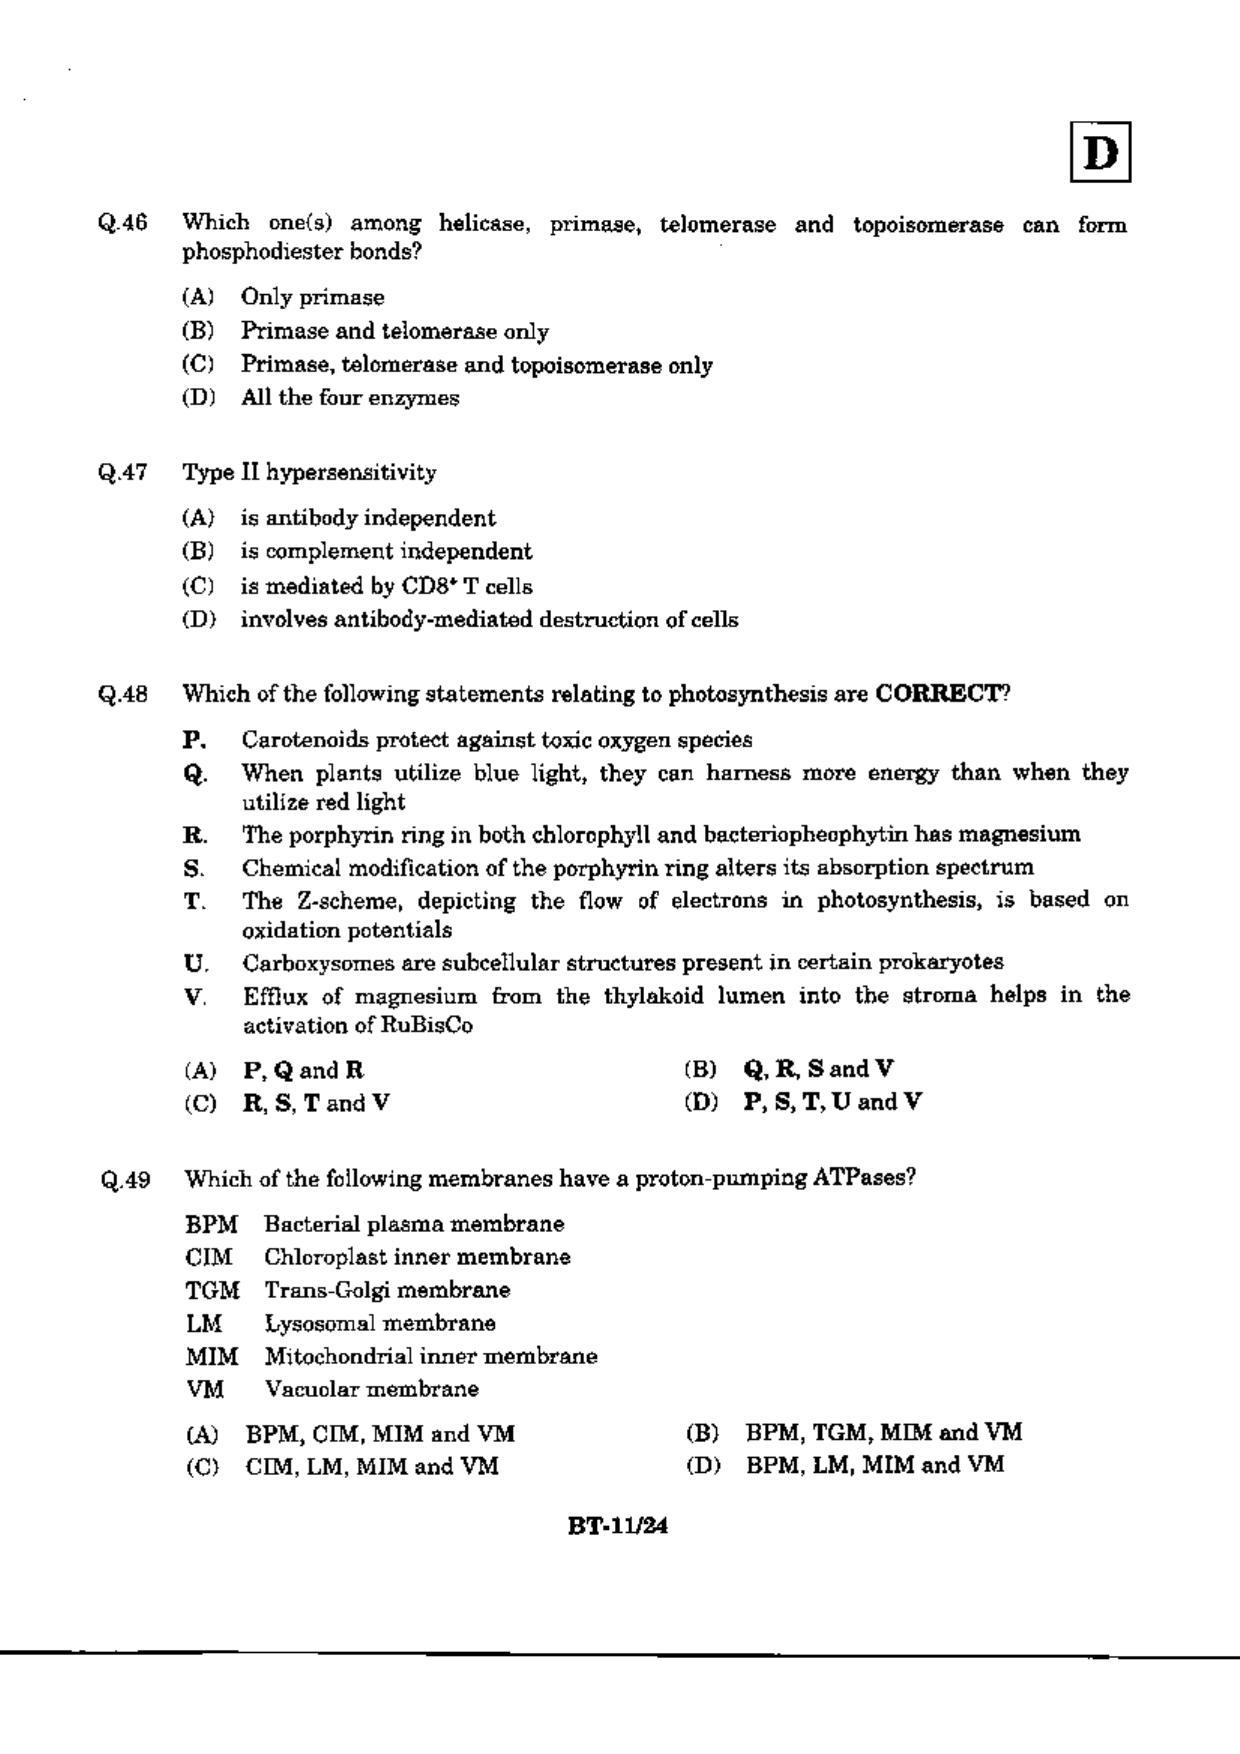 JAM 2010: BT Question Paper - Page 13